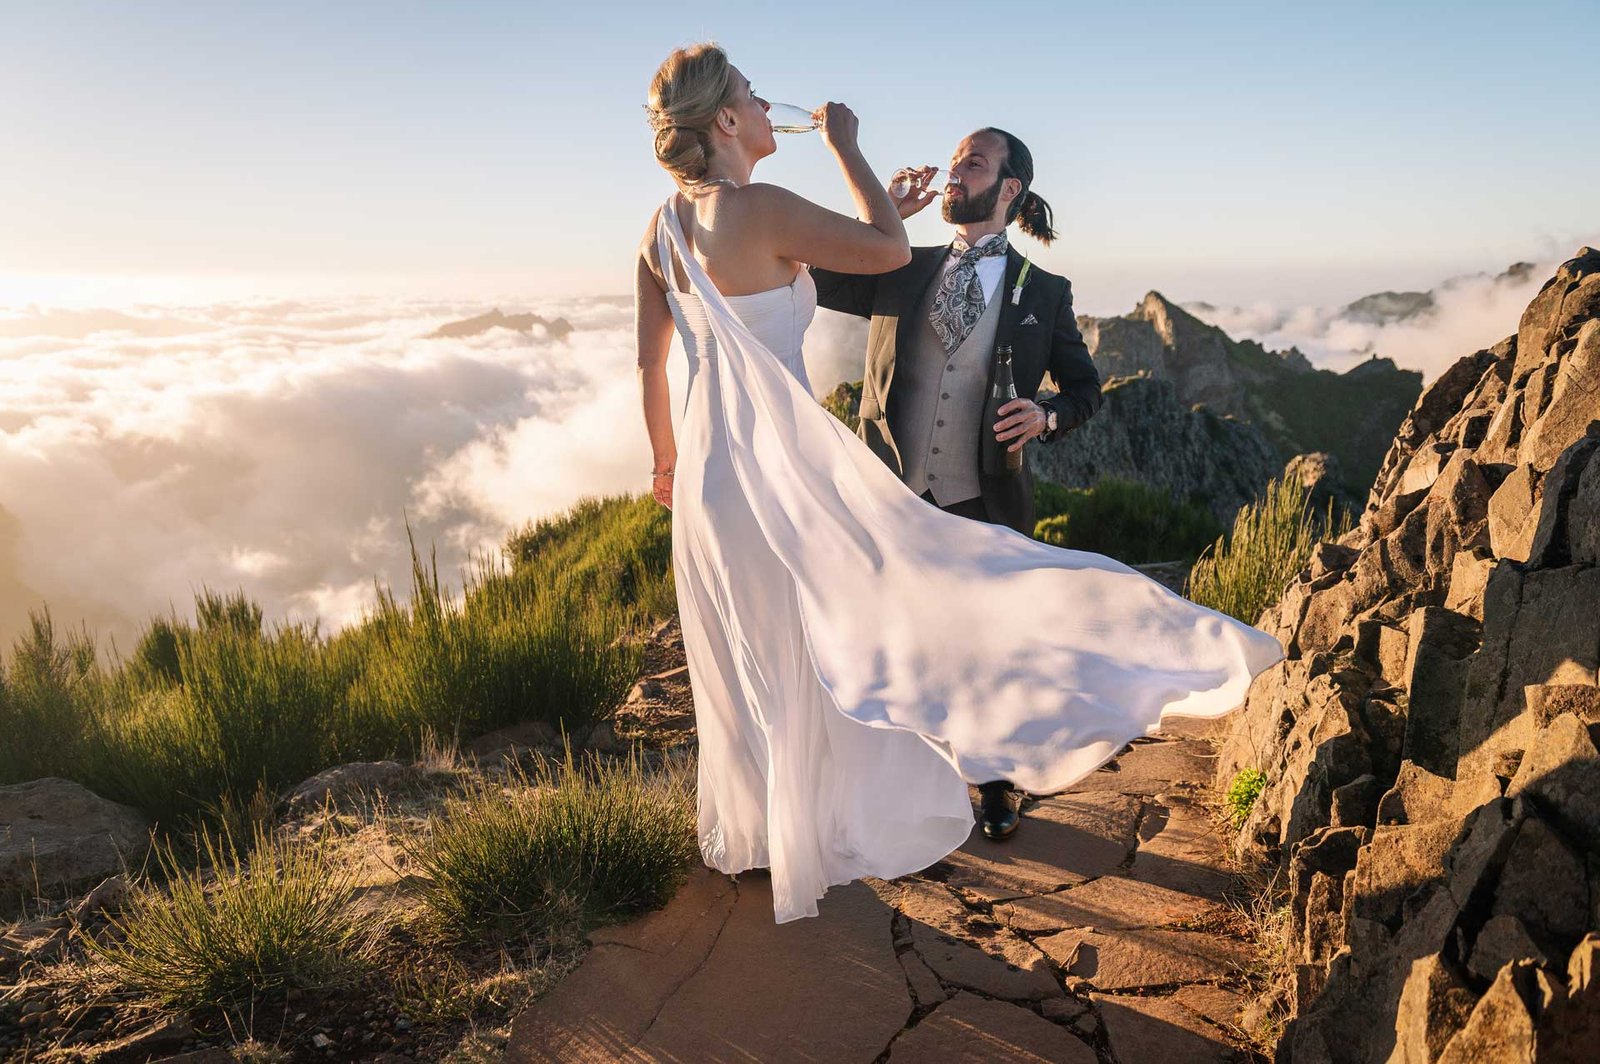 Wedding photo session at Arieiro Peak